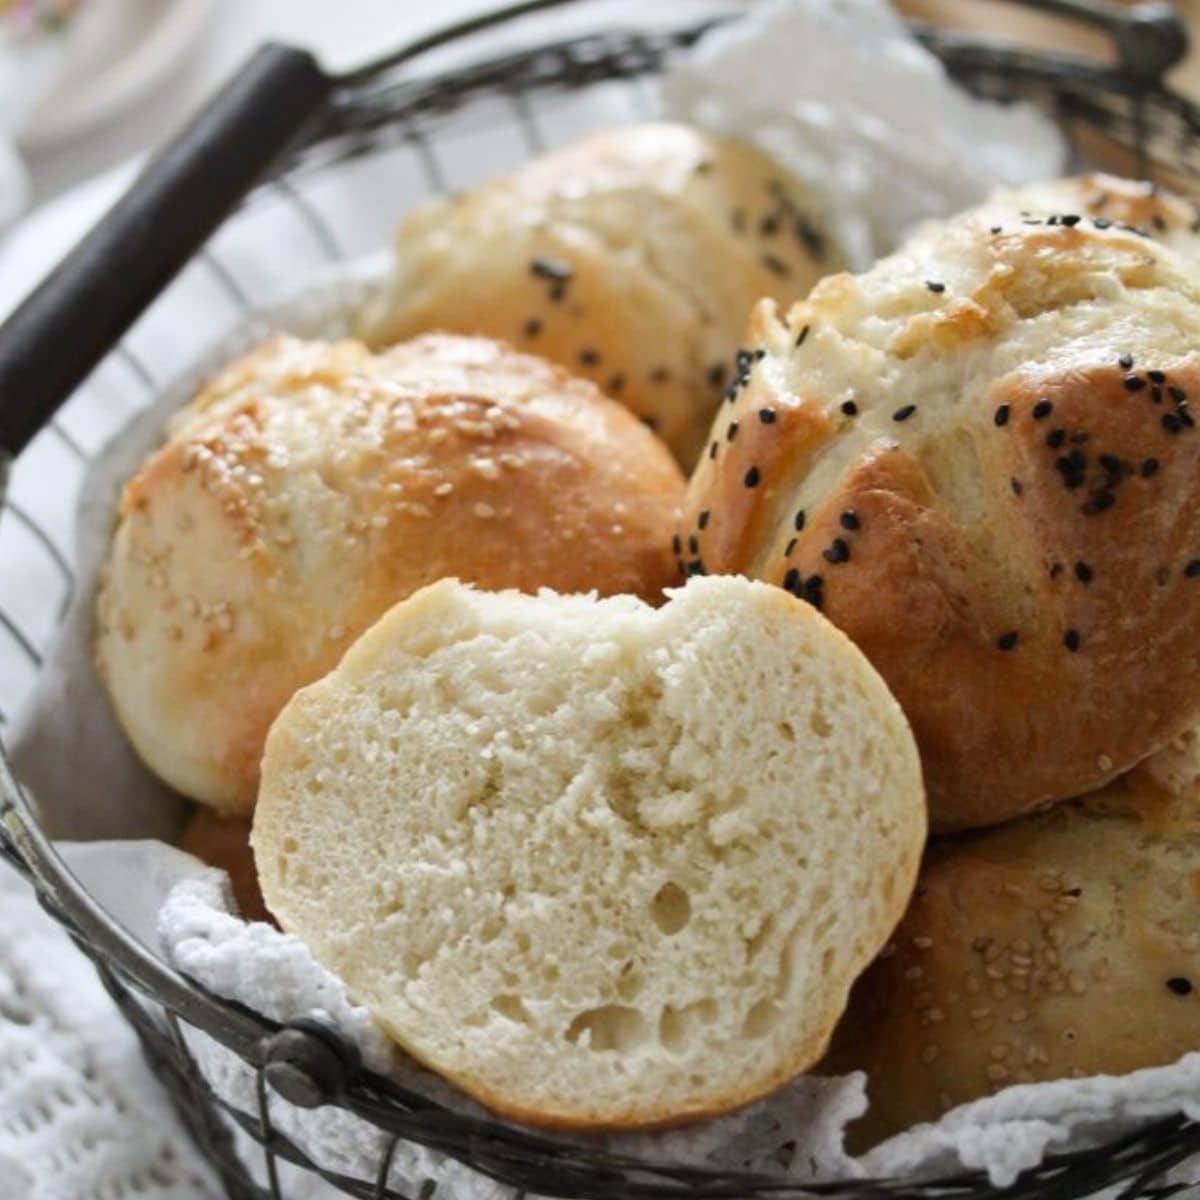 breakfast bread rolls in a bread basket, one split to show the crumb.